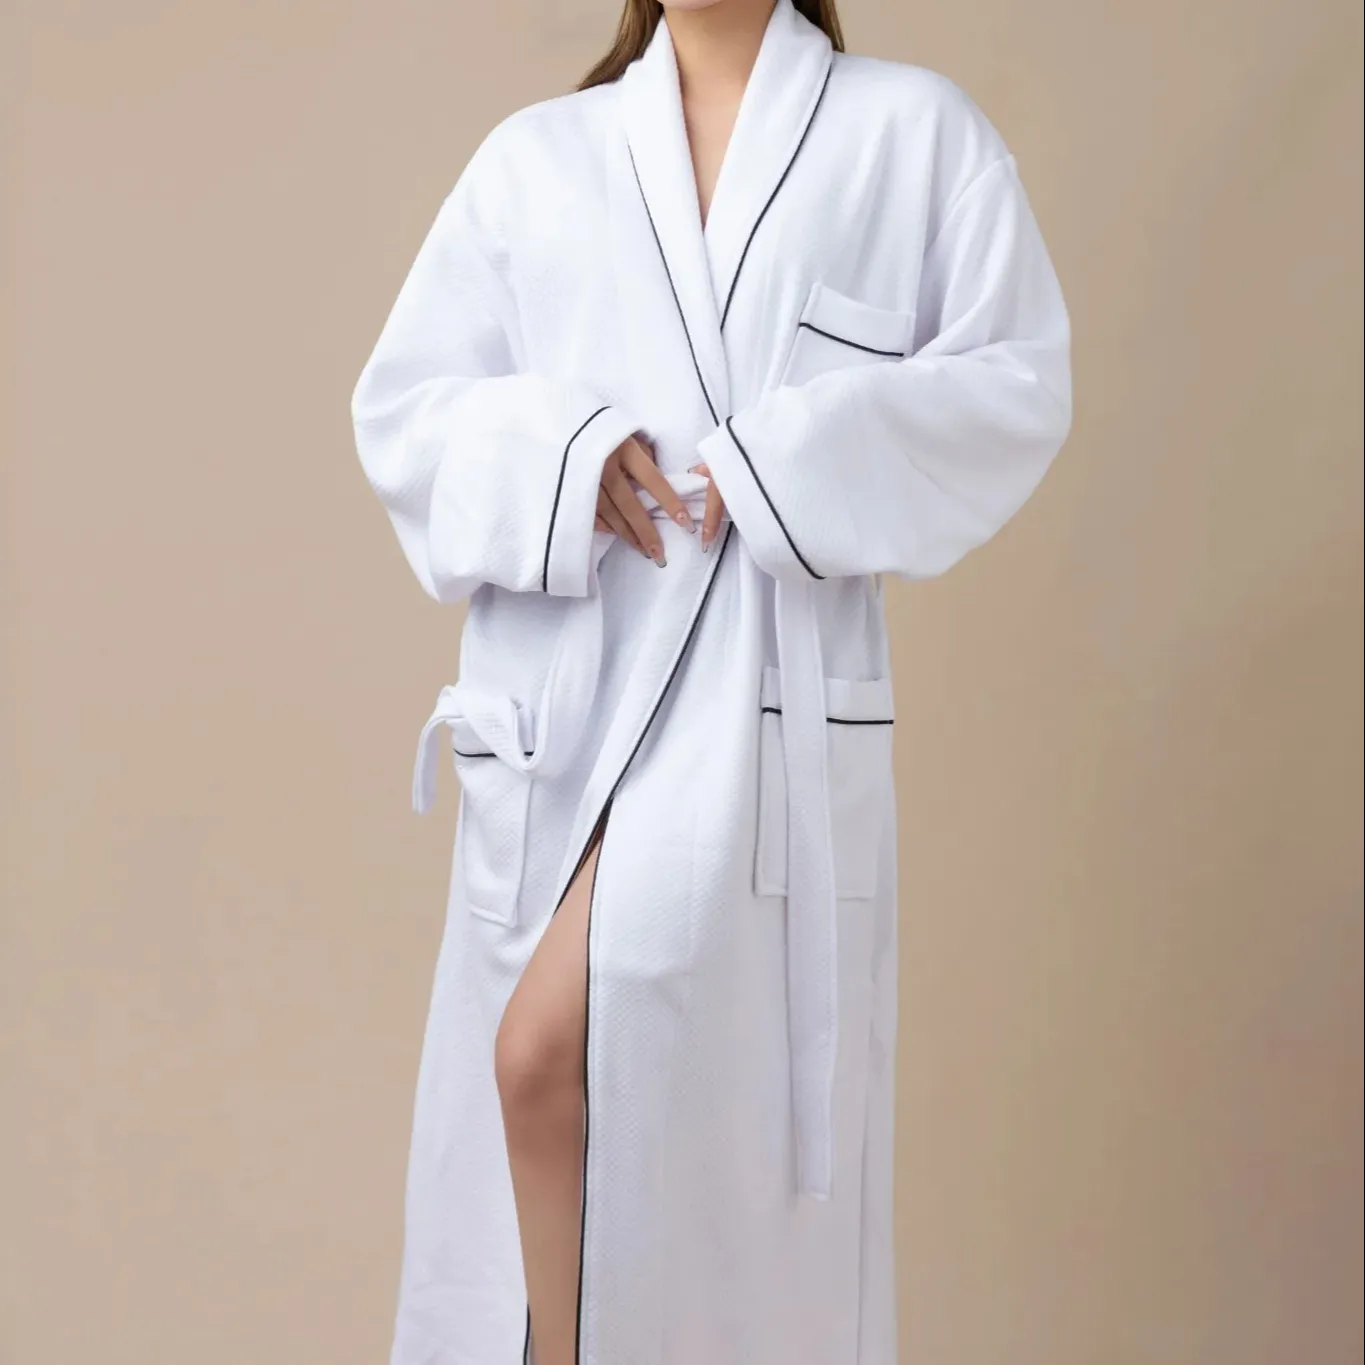 होटल लक्जरी wffle वस्त्र महिला कस्टम लोगो के लिए 100% जैविक कपास स्नान वस्त्र वस्त्र वस्त्र महिला कस्टम लोगो के लिए